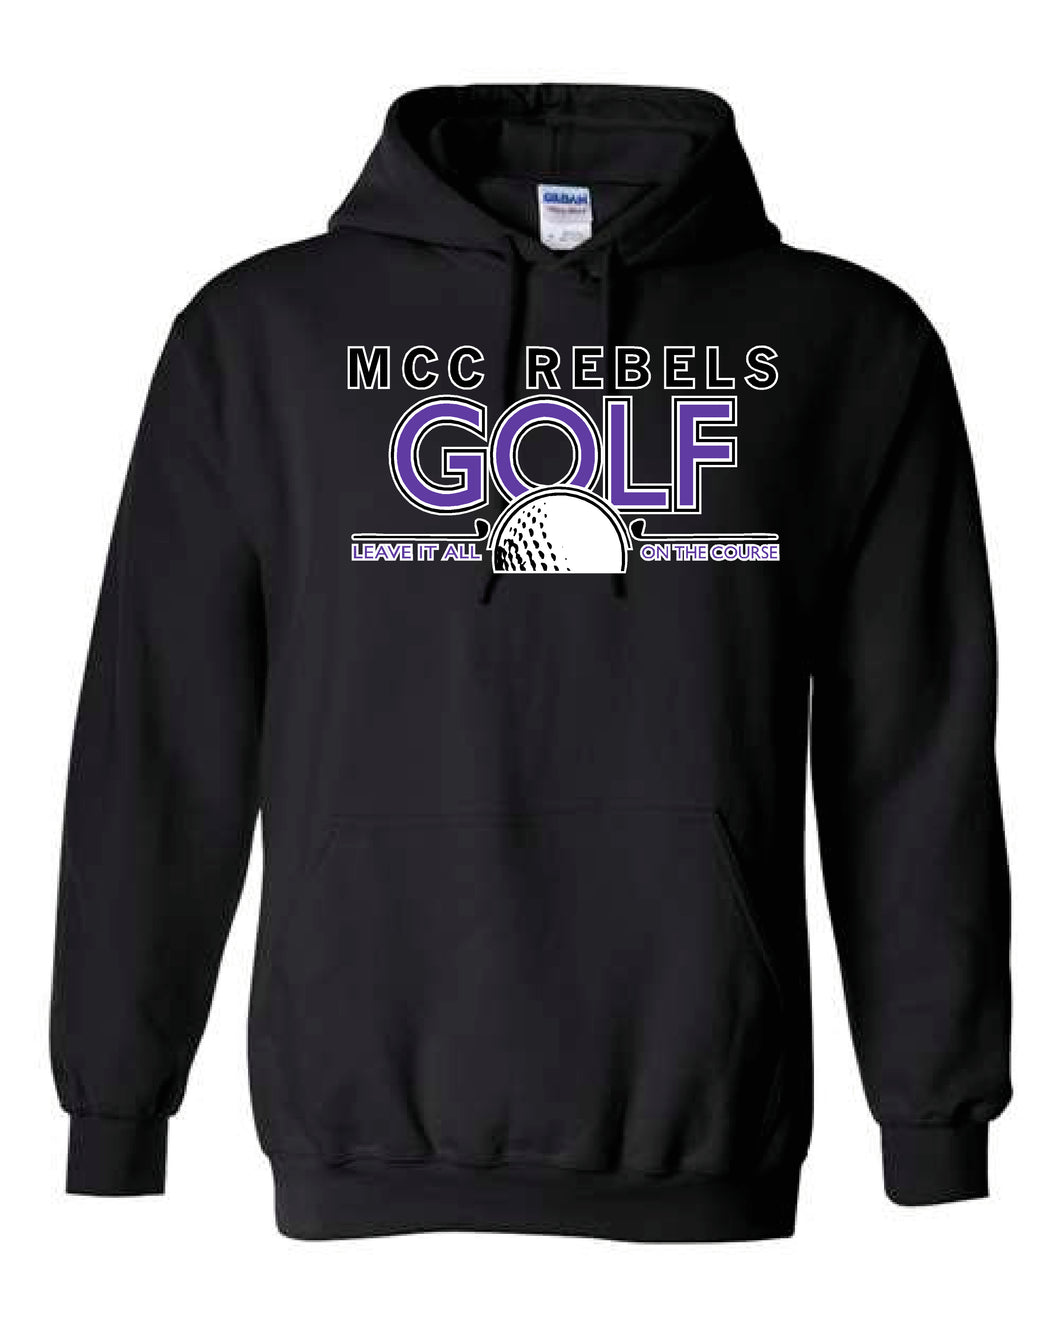 MCC Rebels Golf Gildan Sweatshirt - Black